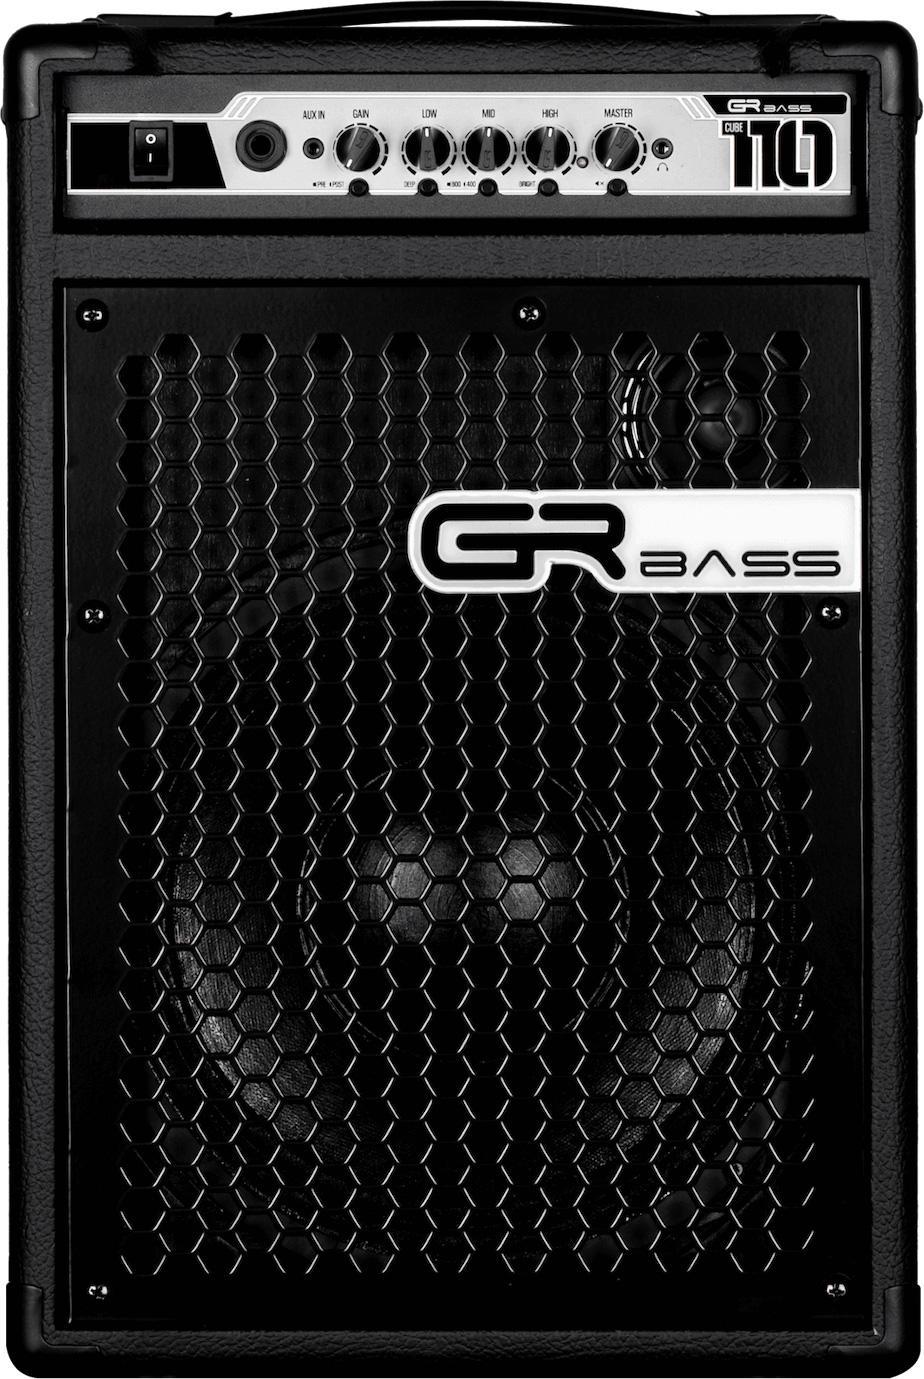 Bass combo amp Gr bass GR Cube 110